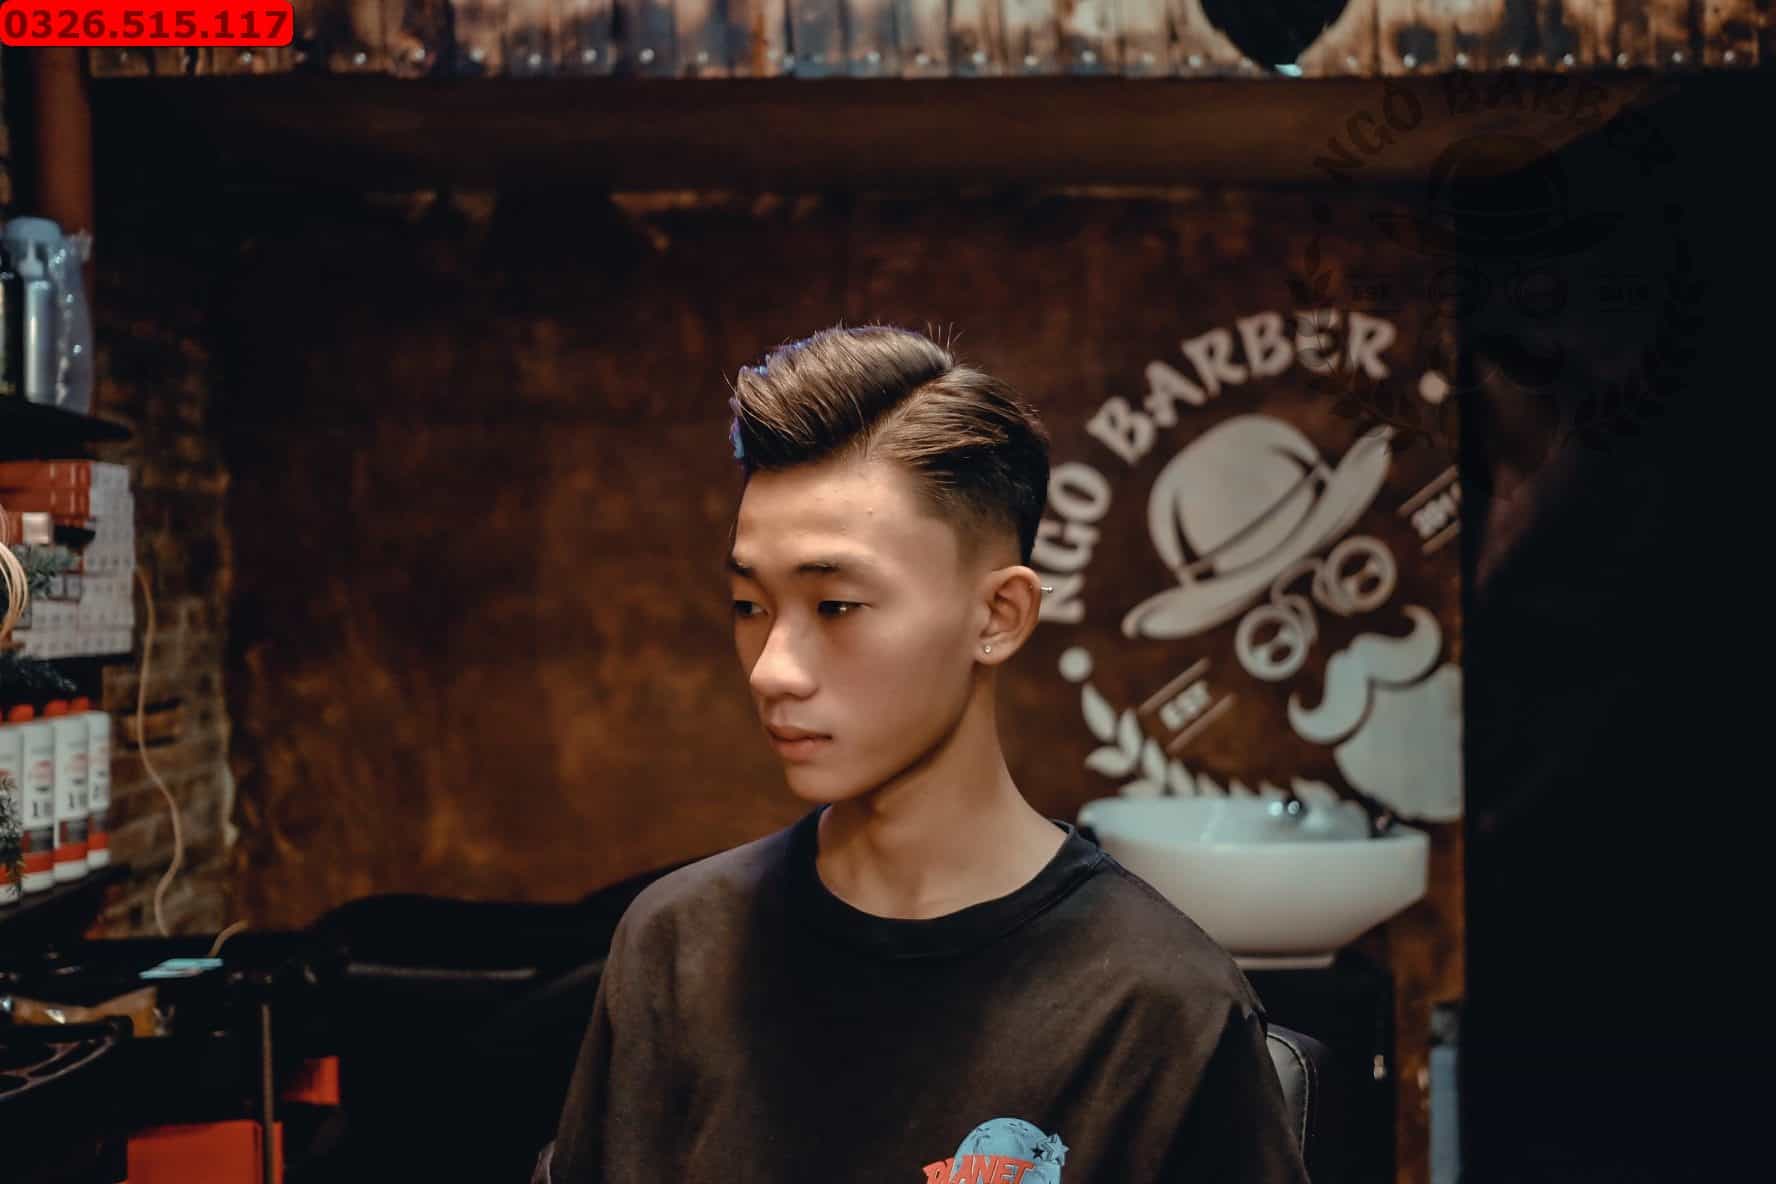 Hãy cùng khám phá những kiểu tóc nam đẹp nhất tại Sài Gòn! Bạn sẽ không thể bỏ qua những gợi ý mới lạ và chất lượng từ các chuyên viên cắt tóc chuyên nghiệp. Hãy đến và trải nghiệm để tạo nên vẻ ngoài hoàn hảo nhất cho bản thân!